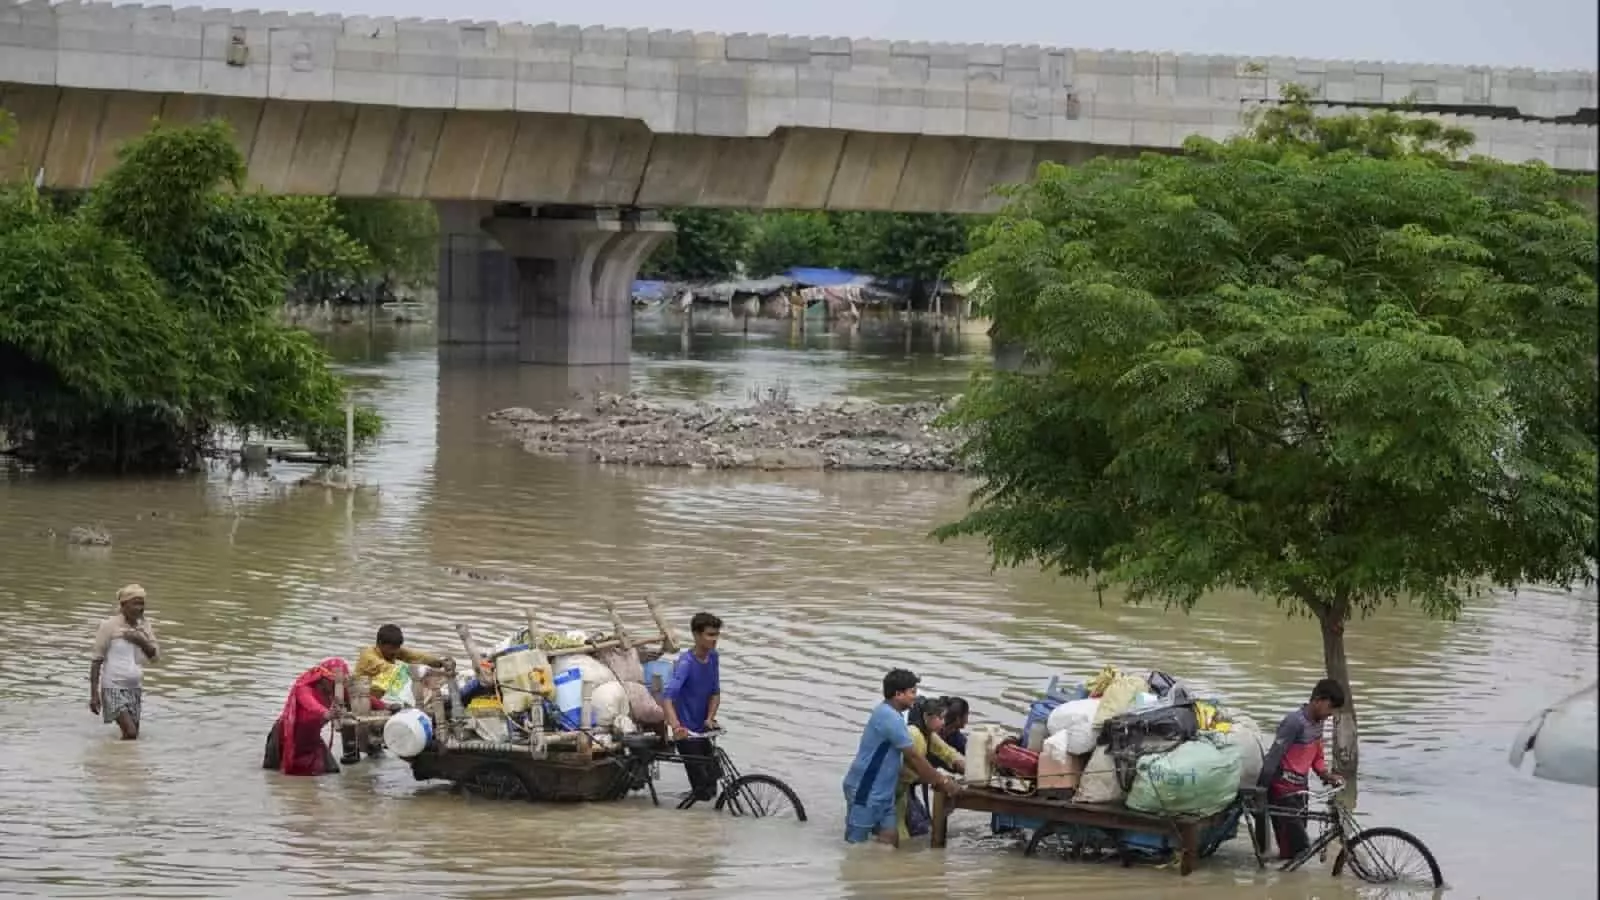 DELHI FLOOD ALERT: दिल्ली में एक बार फिर भीषण बाढ़ का अलर्ट, क्या कल बंद रहेंगे स्कूल? जानें UPDATE